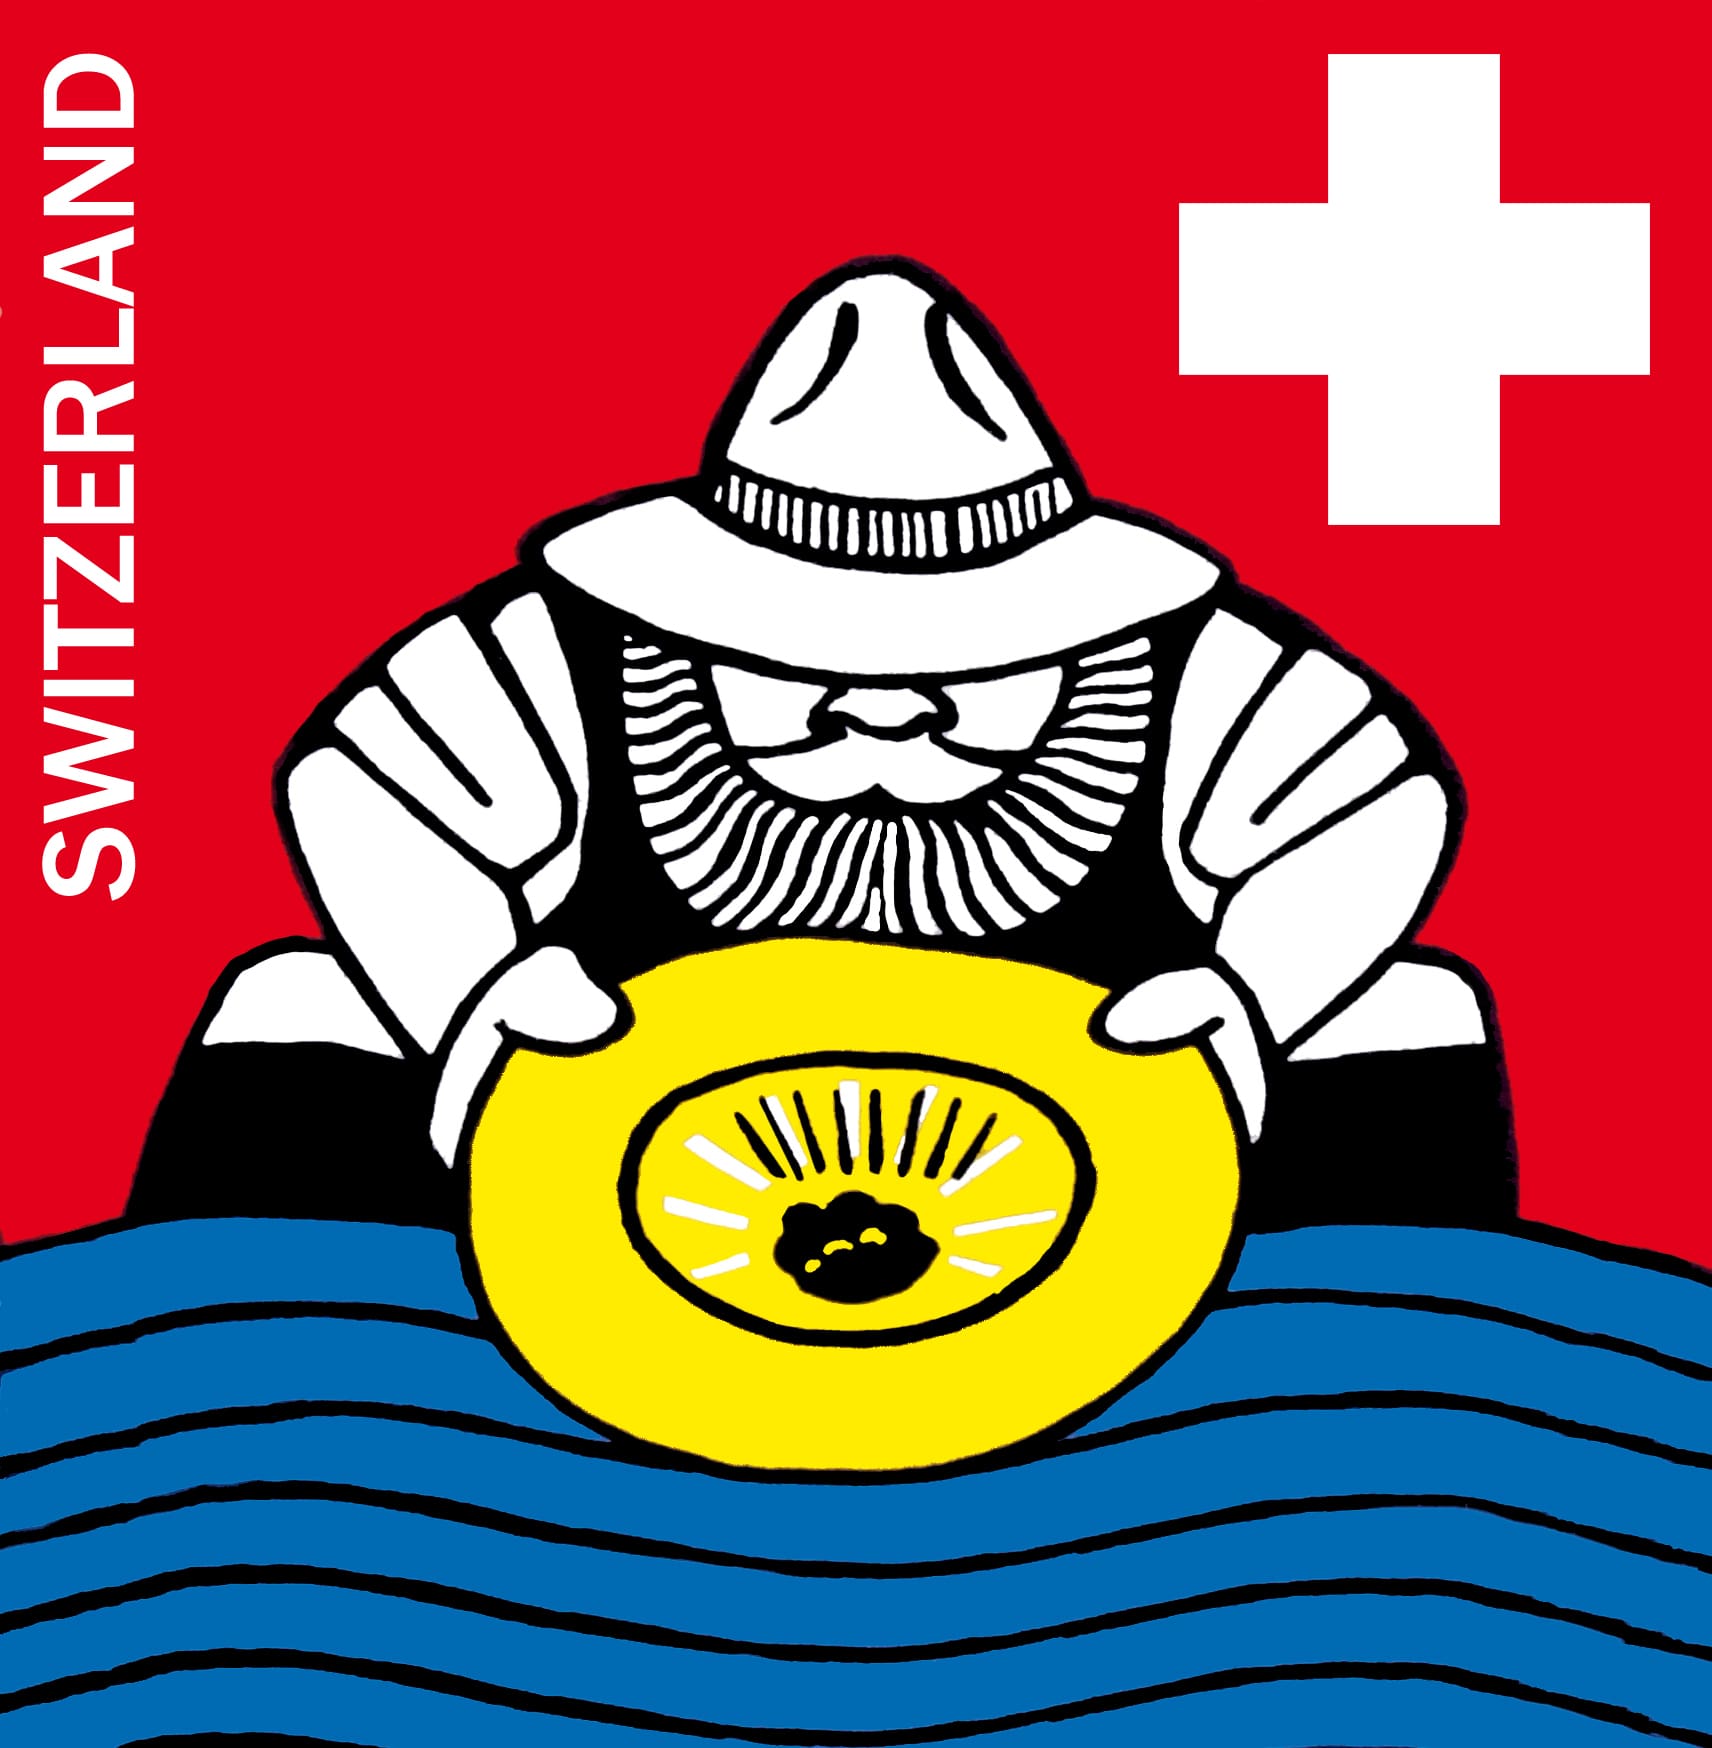 Schweizerische Goldwäschervereinigung